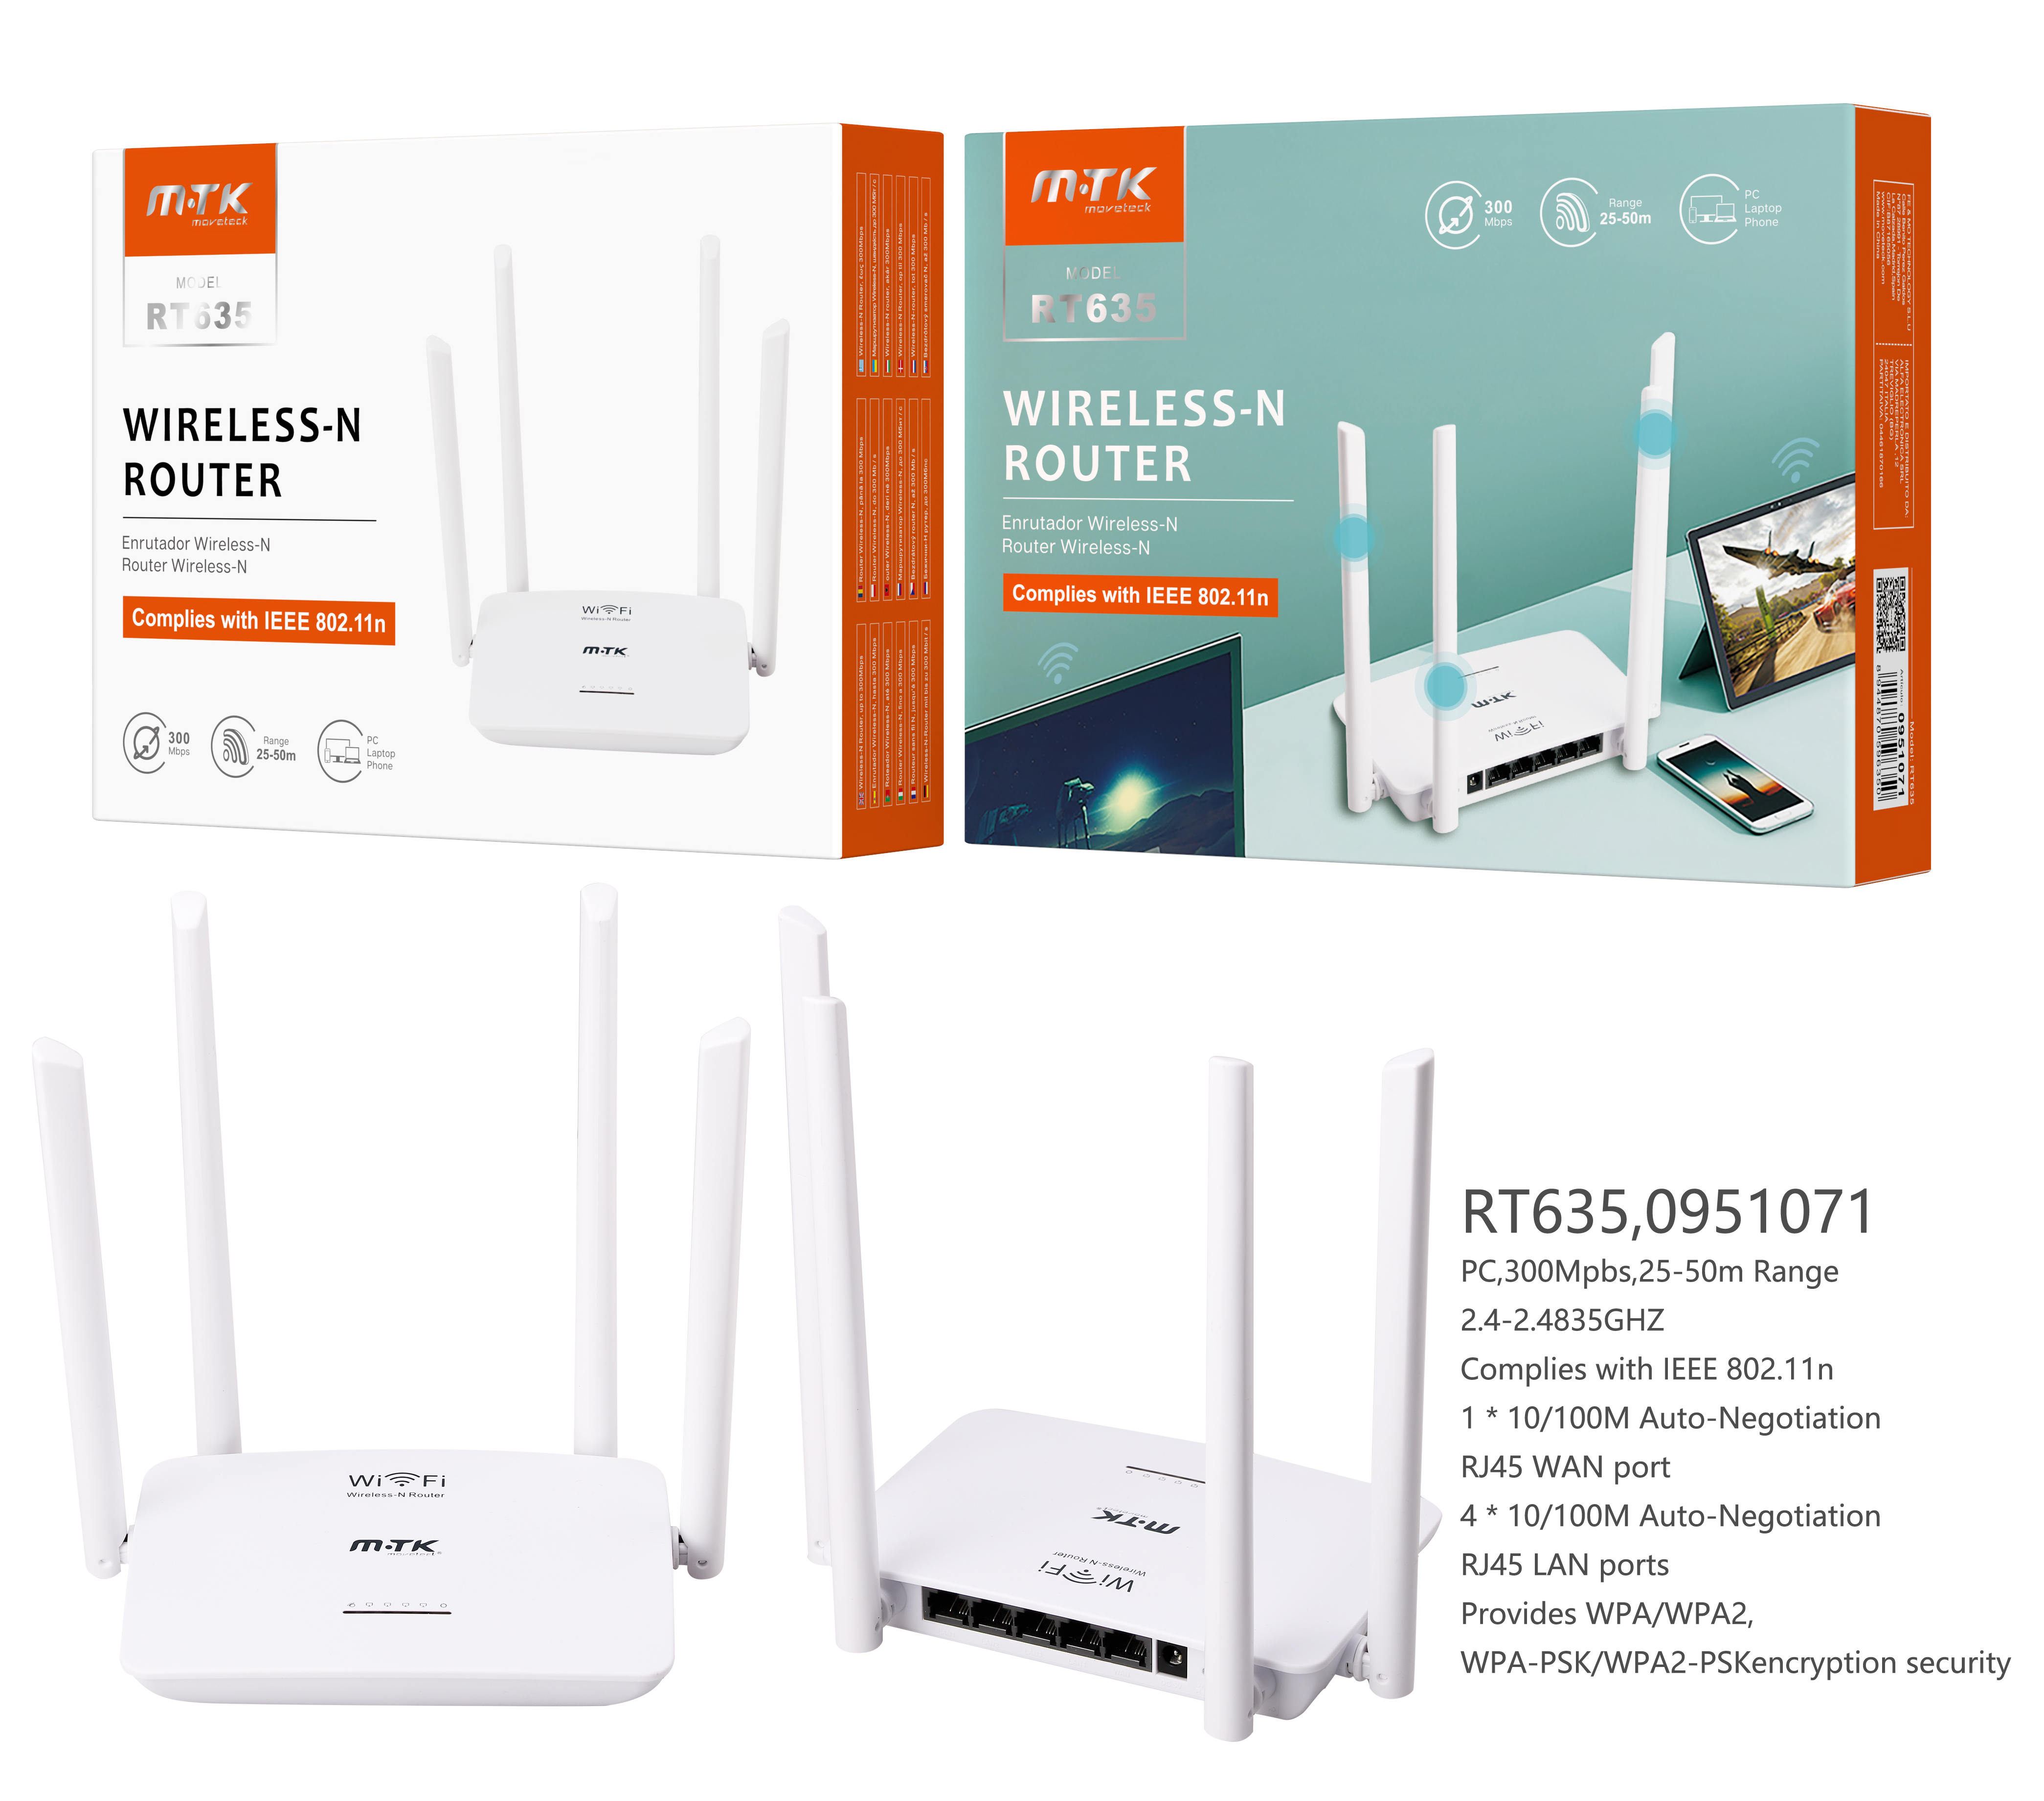 RT635 BL Router de Wifi inalambrico con 4 antenas, 4 Puertos LAN y 1 Puerto WAN, 300 Mbps , Blanco